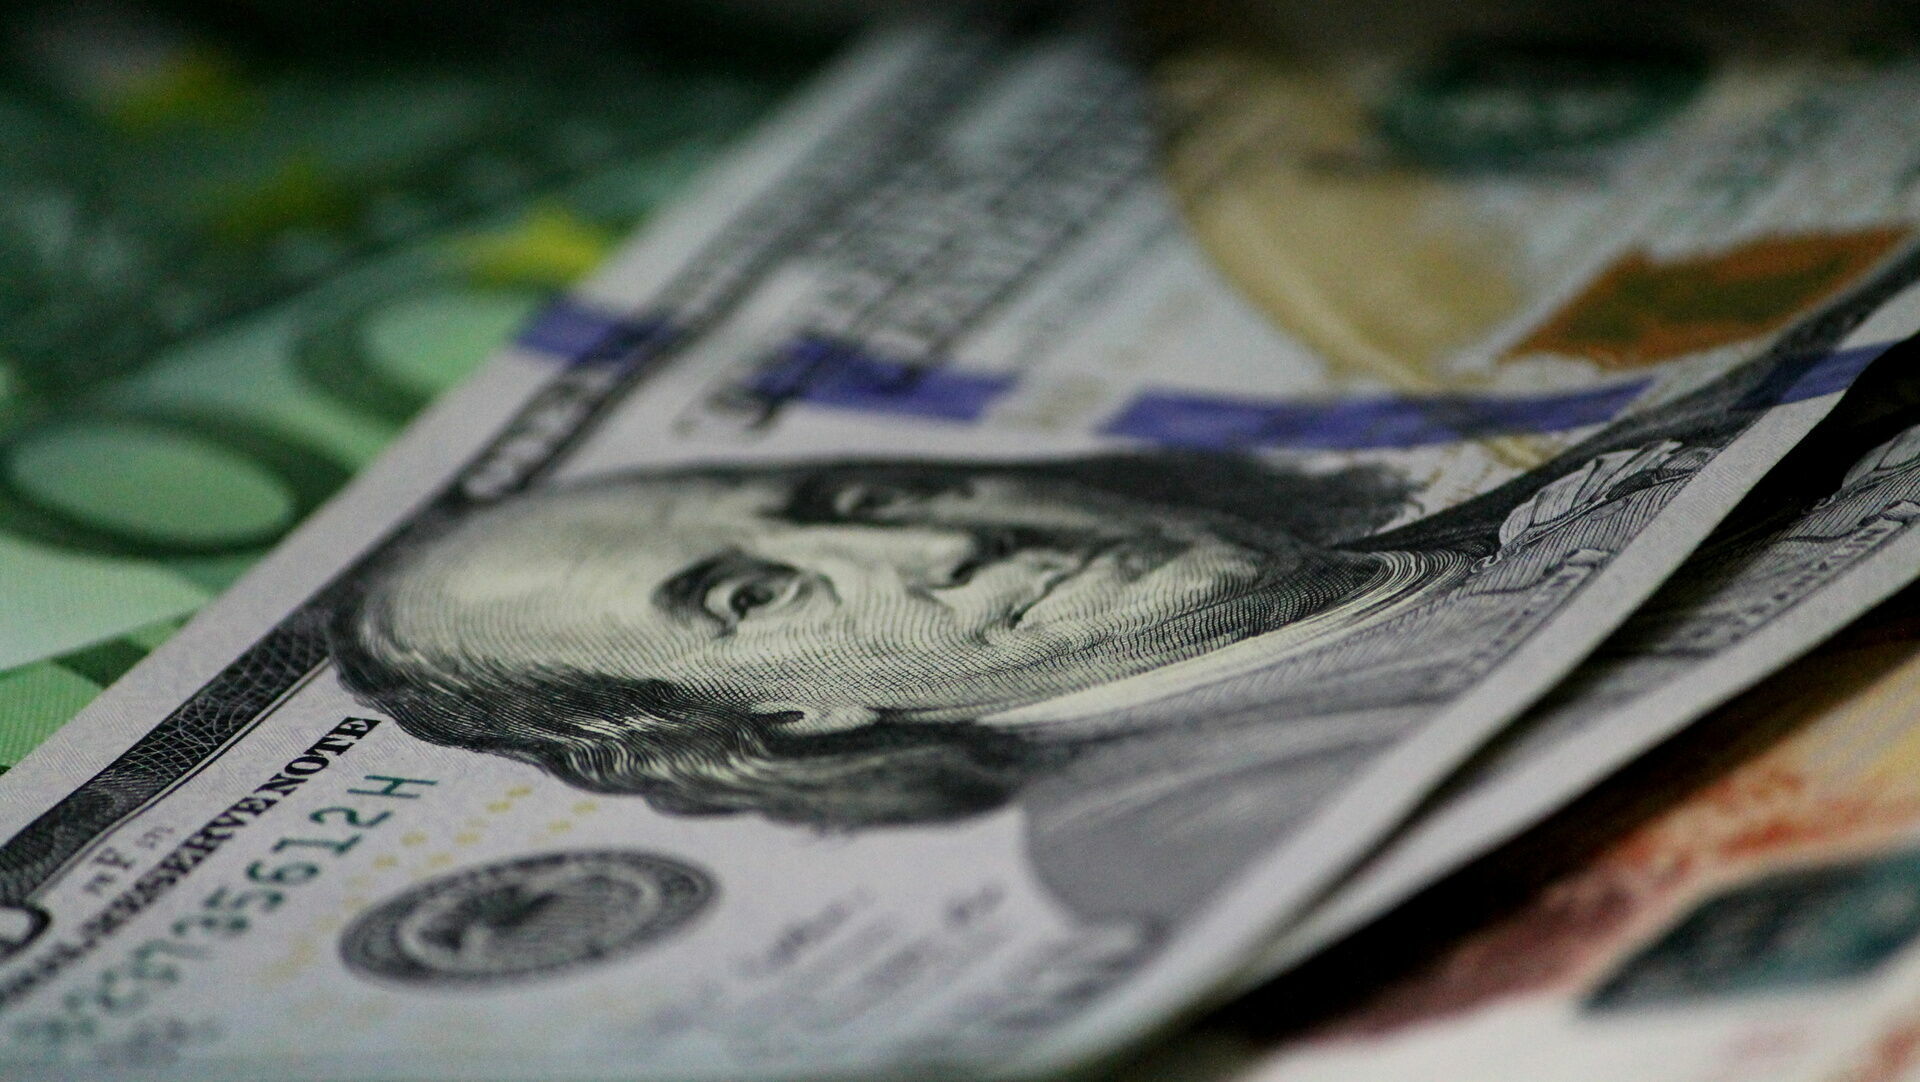 Курс доллара достиг исторического максимума - 140 рублей, курс евро - 145 рублей